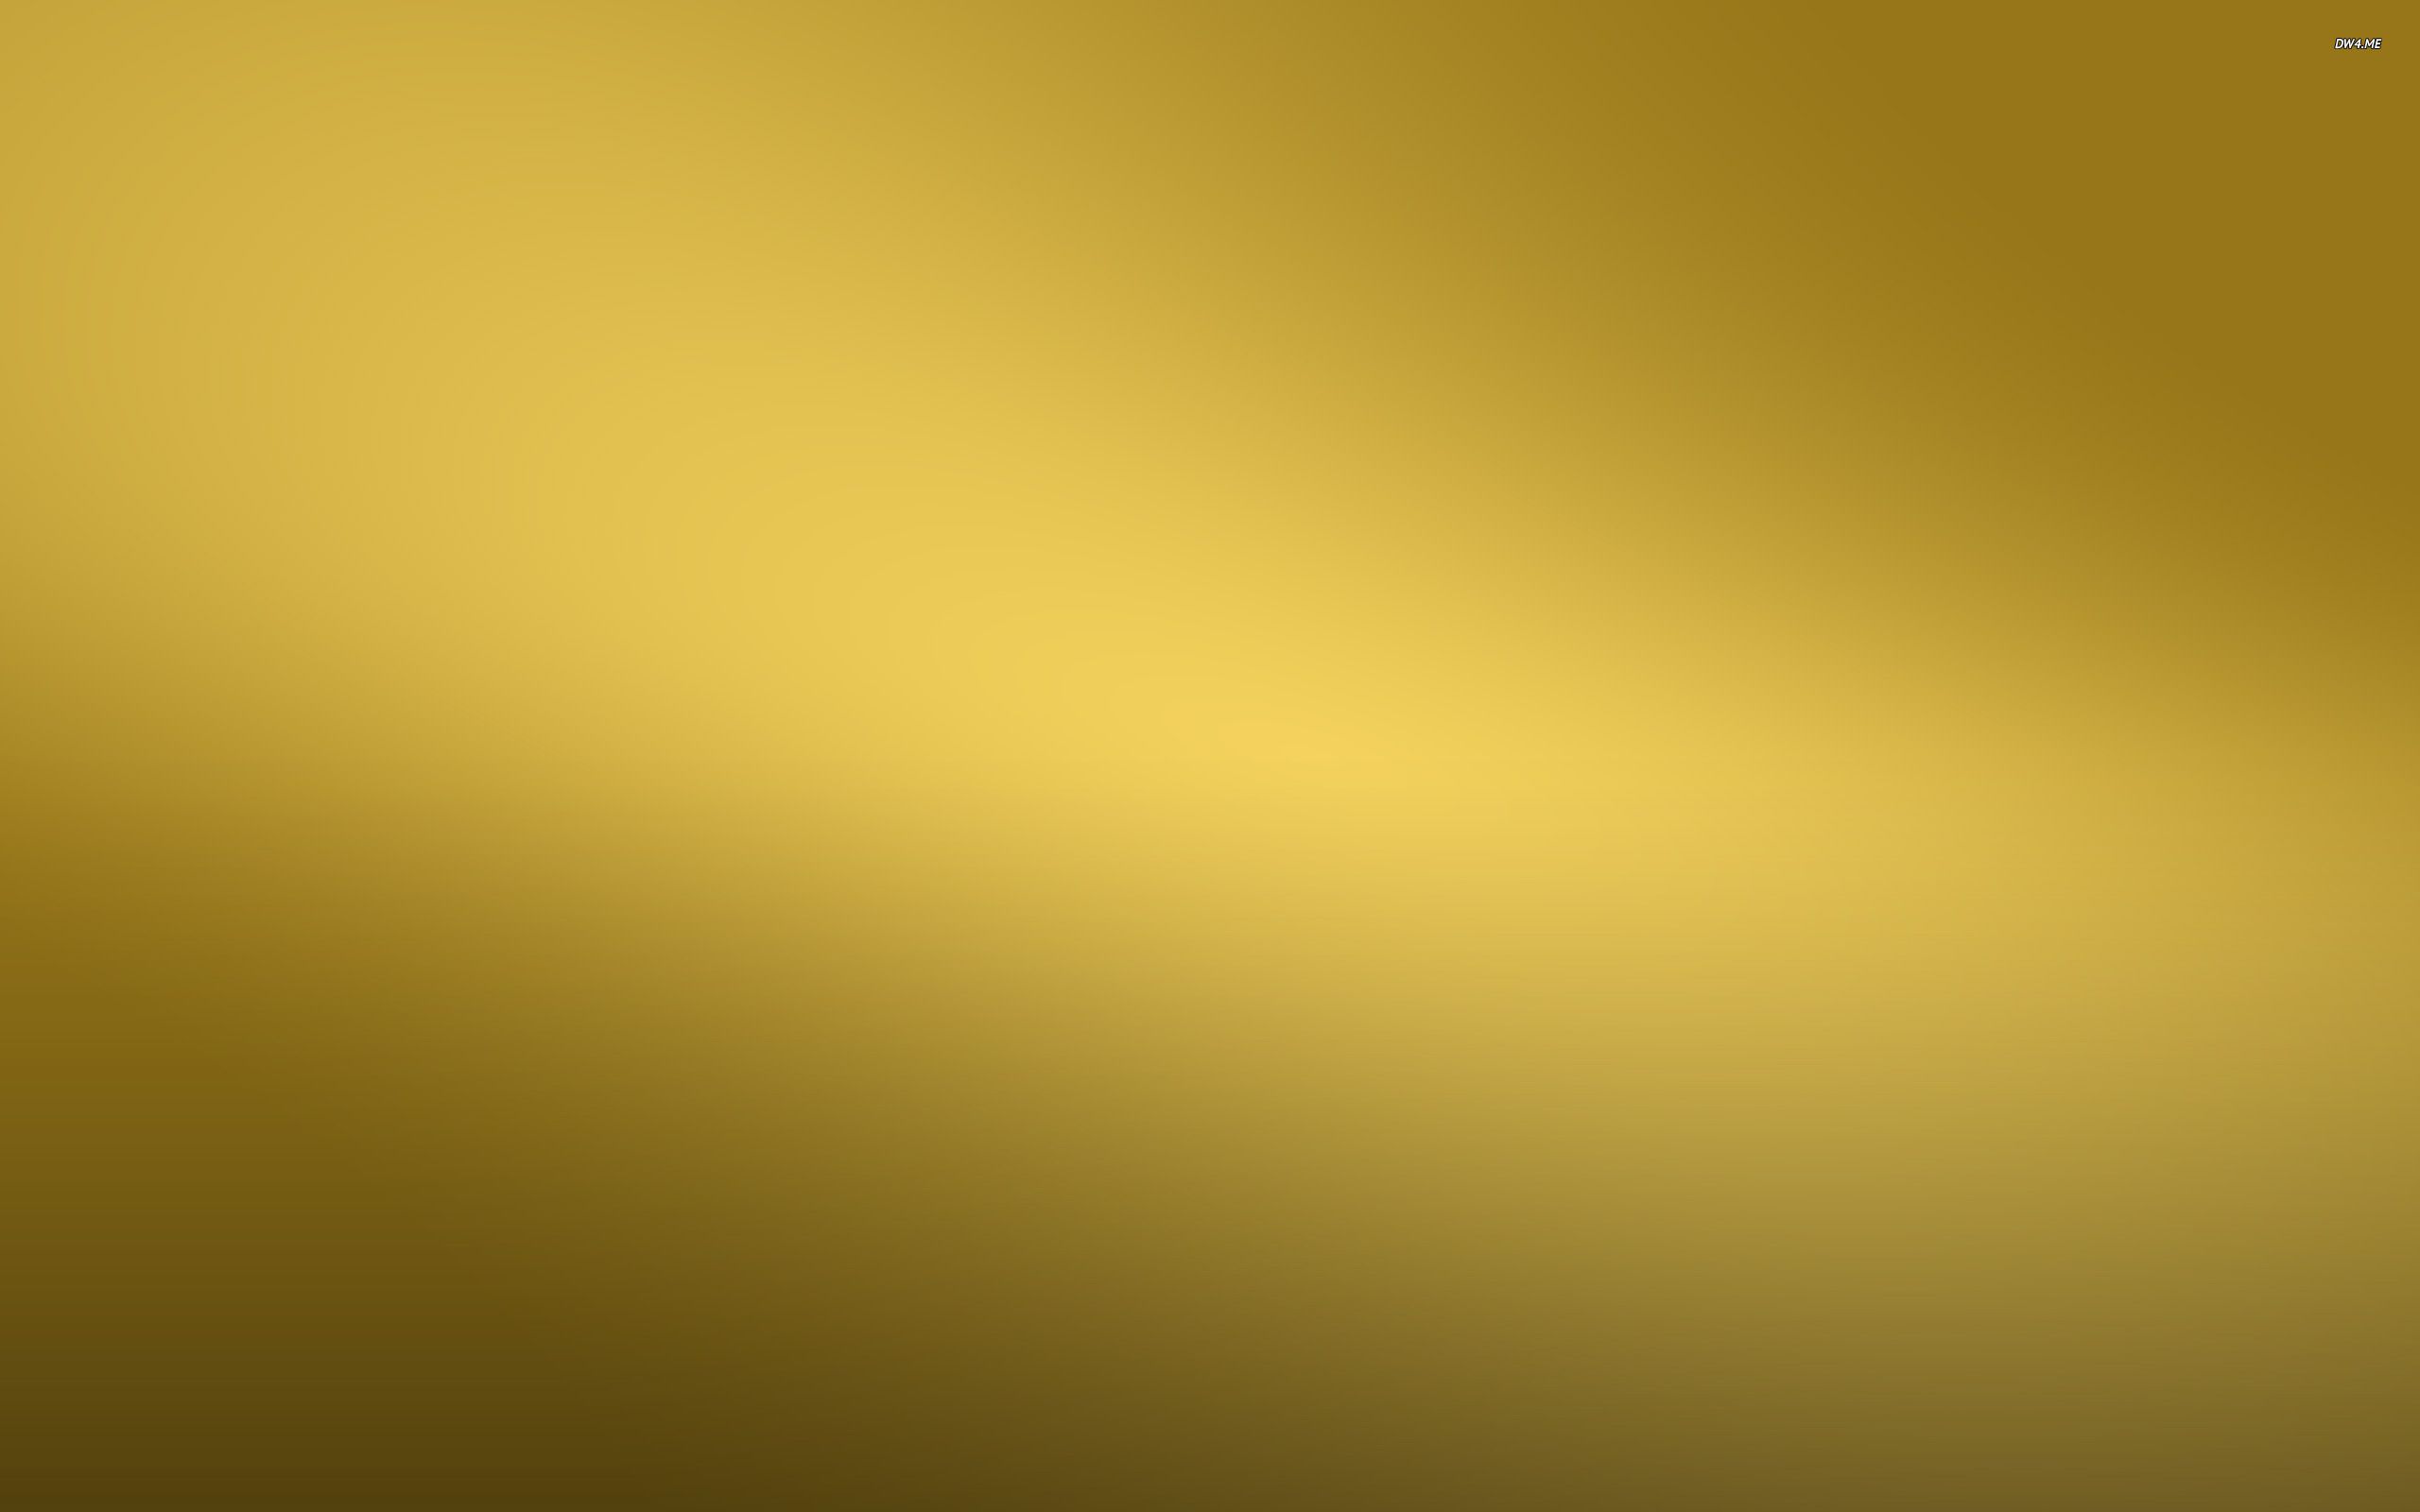 Hình nền gold color kim tiếp tục thực hiện tăng nhanh độ quý hiếm của việc làm của người sử dụng với sắc vàng kim lấp lánh lung linh và thức tỉnh xúc cảm tươi tắn mới nhất. Được update cho tới năm 2024, hình nền này tiếp tục mang đến sự tươi tắn sáng sủa vào cụ thể từng khoảnh xung khắc mang lại vũ trang của người sử dụng.